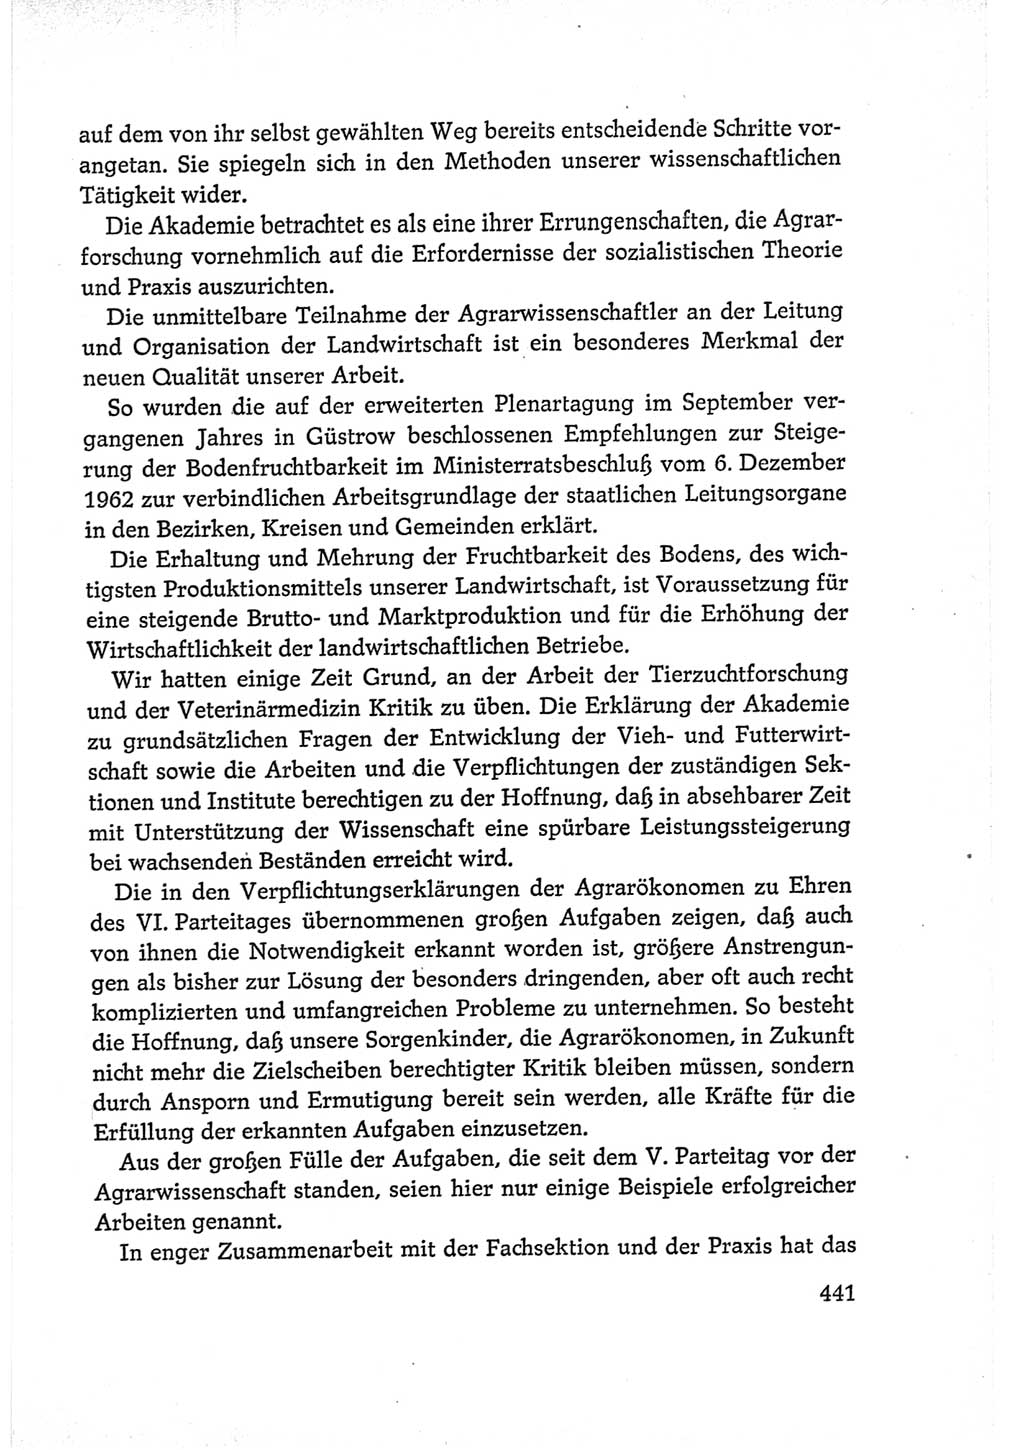 Protokoll der Verhandlungen des Ⅵ. Parteitages der Sozialistischen Einheitspartei Deutschlands (SED) [Deutsche Demokratische Republik (DDR)] 1963, Band Ⅰ, Seite 441 (Prot. Verh. Ⅵ. PT SED DDR 1963, Bd. Ⅰ, S. 441)